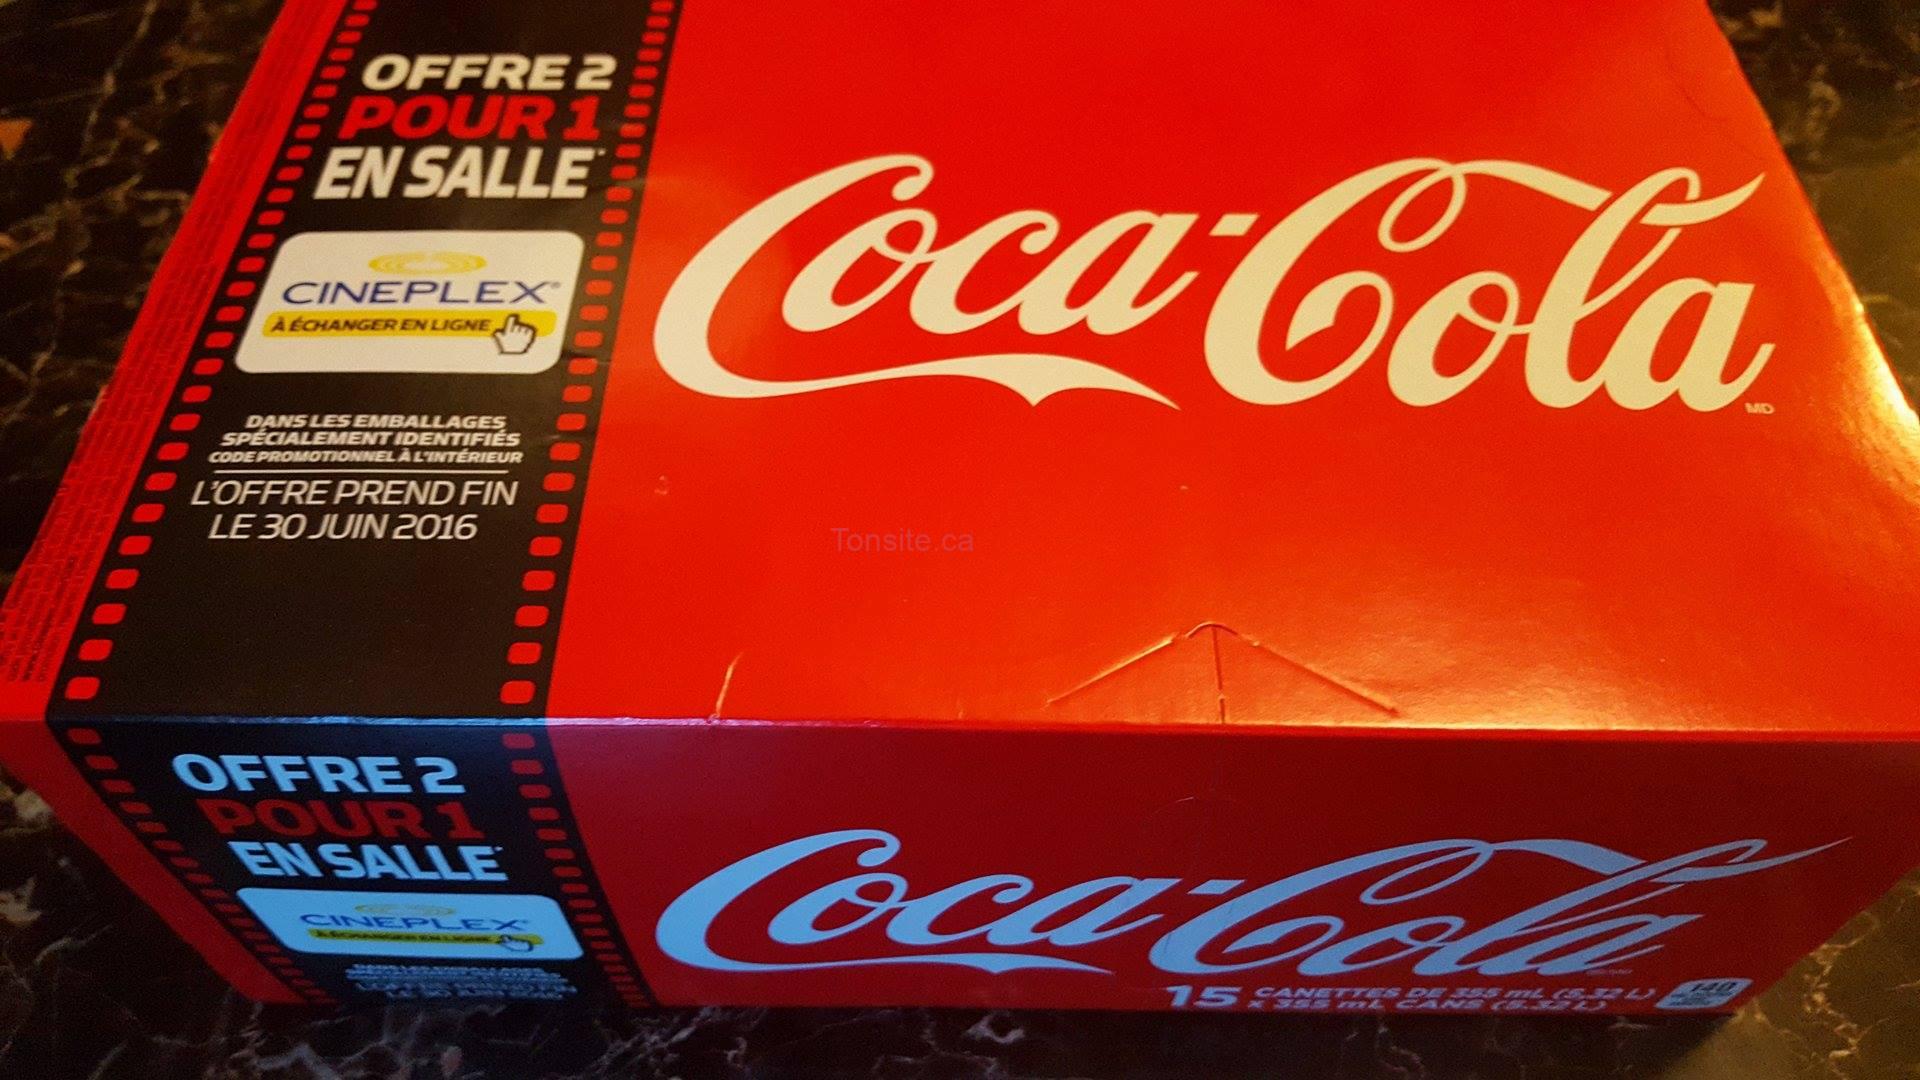 Cineplex-offre-coca-cola